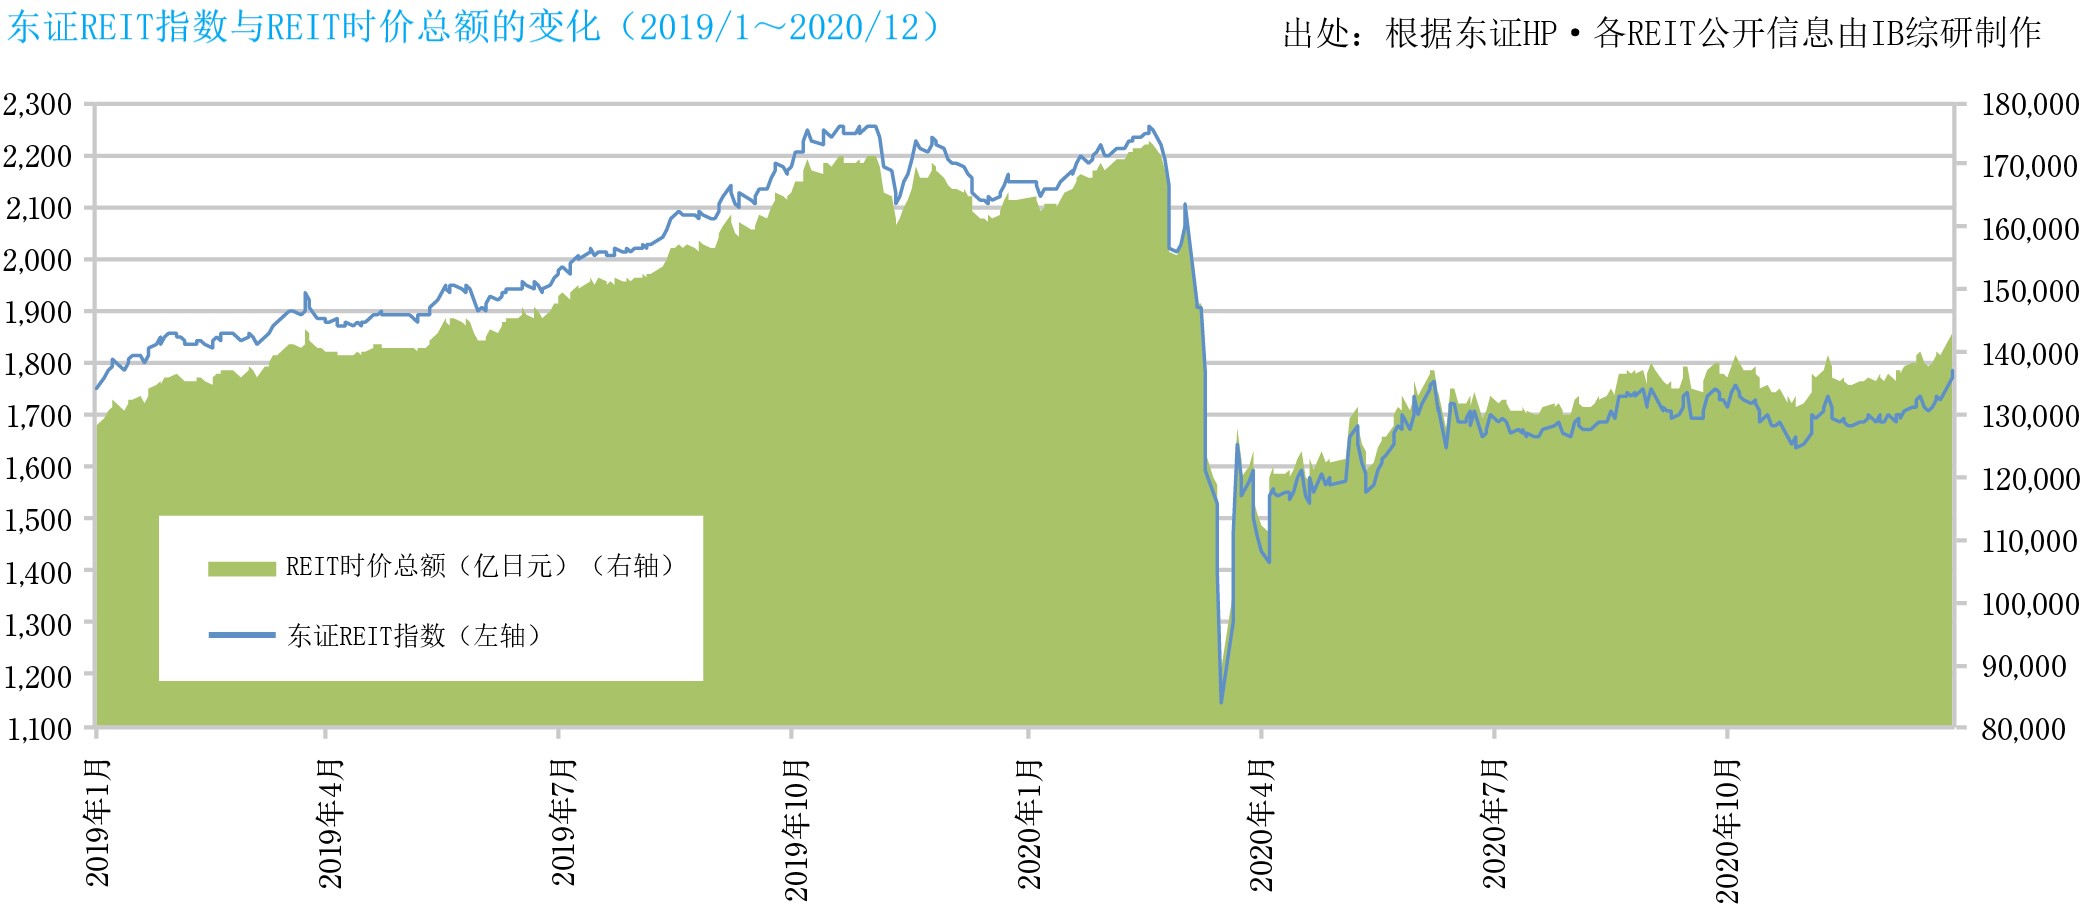 截至2020年12月底，东证REIT指数为1,783.90点，较9月上升57.24点，REIT总市值为143,974亿日元，较9月份增加7,389亿日元。东证REIT指数自6月以来一直停滞在1,700点左右，但在年底时与股市行情一起上涨，该指数达到了3月的新冠疫情冲击后的最高点。 REIT整体运用资产余额为202,862亿日元，较9月底增加3,189亿日元，在市场成立的19年后，实现了20万亿日元。 在第4季度（10月至12月），REIT市场继续受到新冠疫情的影响，根据房地产的用途呈现明暗分明的状况。关于物流设施REIT，在坚挺的投资行情和租赁环境下，资本相继增加，积极地收购房地产。关于住宅REIT，虽然人口一直在从东京都中心地区流向郊区，东京都中心地区的入住率一直在下降，但在坚挺的交易市场下，确保销售收益的动向越来越广泛。关于酒店REIT，在11月以后的感染人数再次扩大以及暂停Go To Travel活动的严峻环境下，酒店的持续运营变得困难，从而导致酒店运营方变更的事例在不断增加。至于商业设施REIT，虽然郊区设施的销售额依旧坚挺，但餐馆等的城市设施因应对租金减免而暂时性的收入减少。关于写字楼REIT，在由于企业业绩的恶化和远程工作的发展而导致入住率明显下降的情况下，倾向于向位置、年限、设备、环境等方面质量更高的房地产进行置换。关于复合型REIT，收购酒店和商业设施的趋势变弱，以住宅和物流设施为中心的高防御性资产组合的动向不断展现。